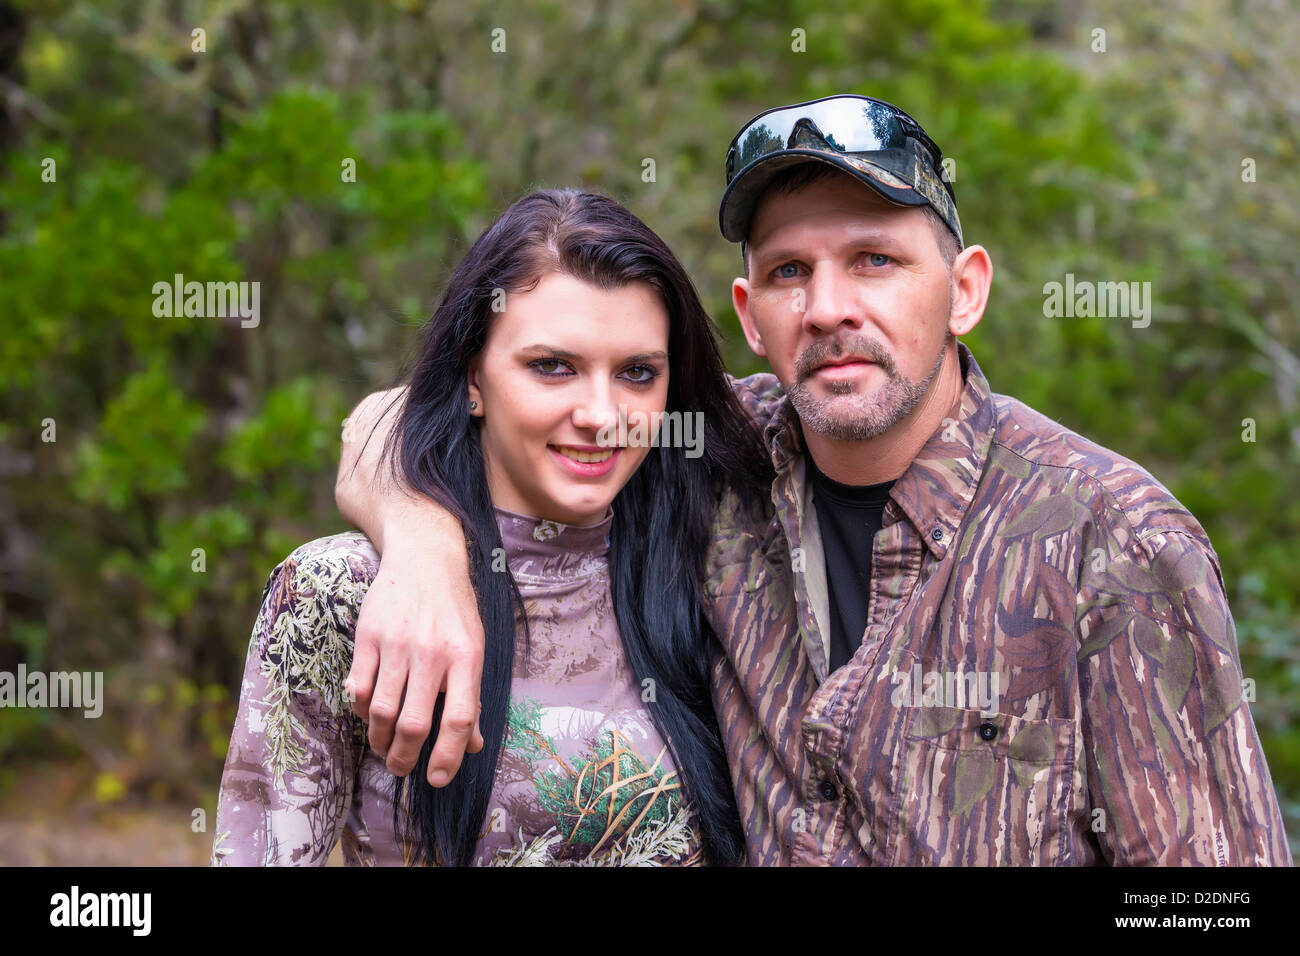 Zwei Jäger Porträt, Vater und Tochter in Camouflage-Outfit, männliche Kaukasier, 40 Jahre alt, Weiblich kaukasischen Stockfoto